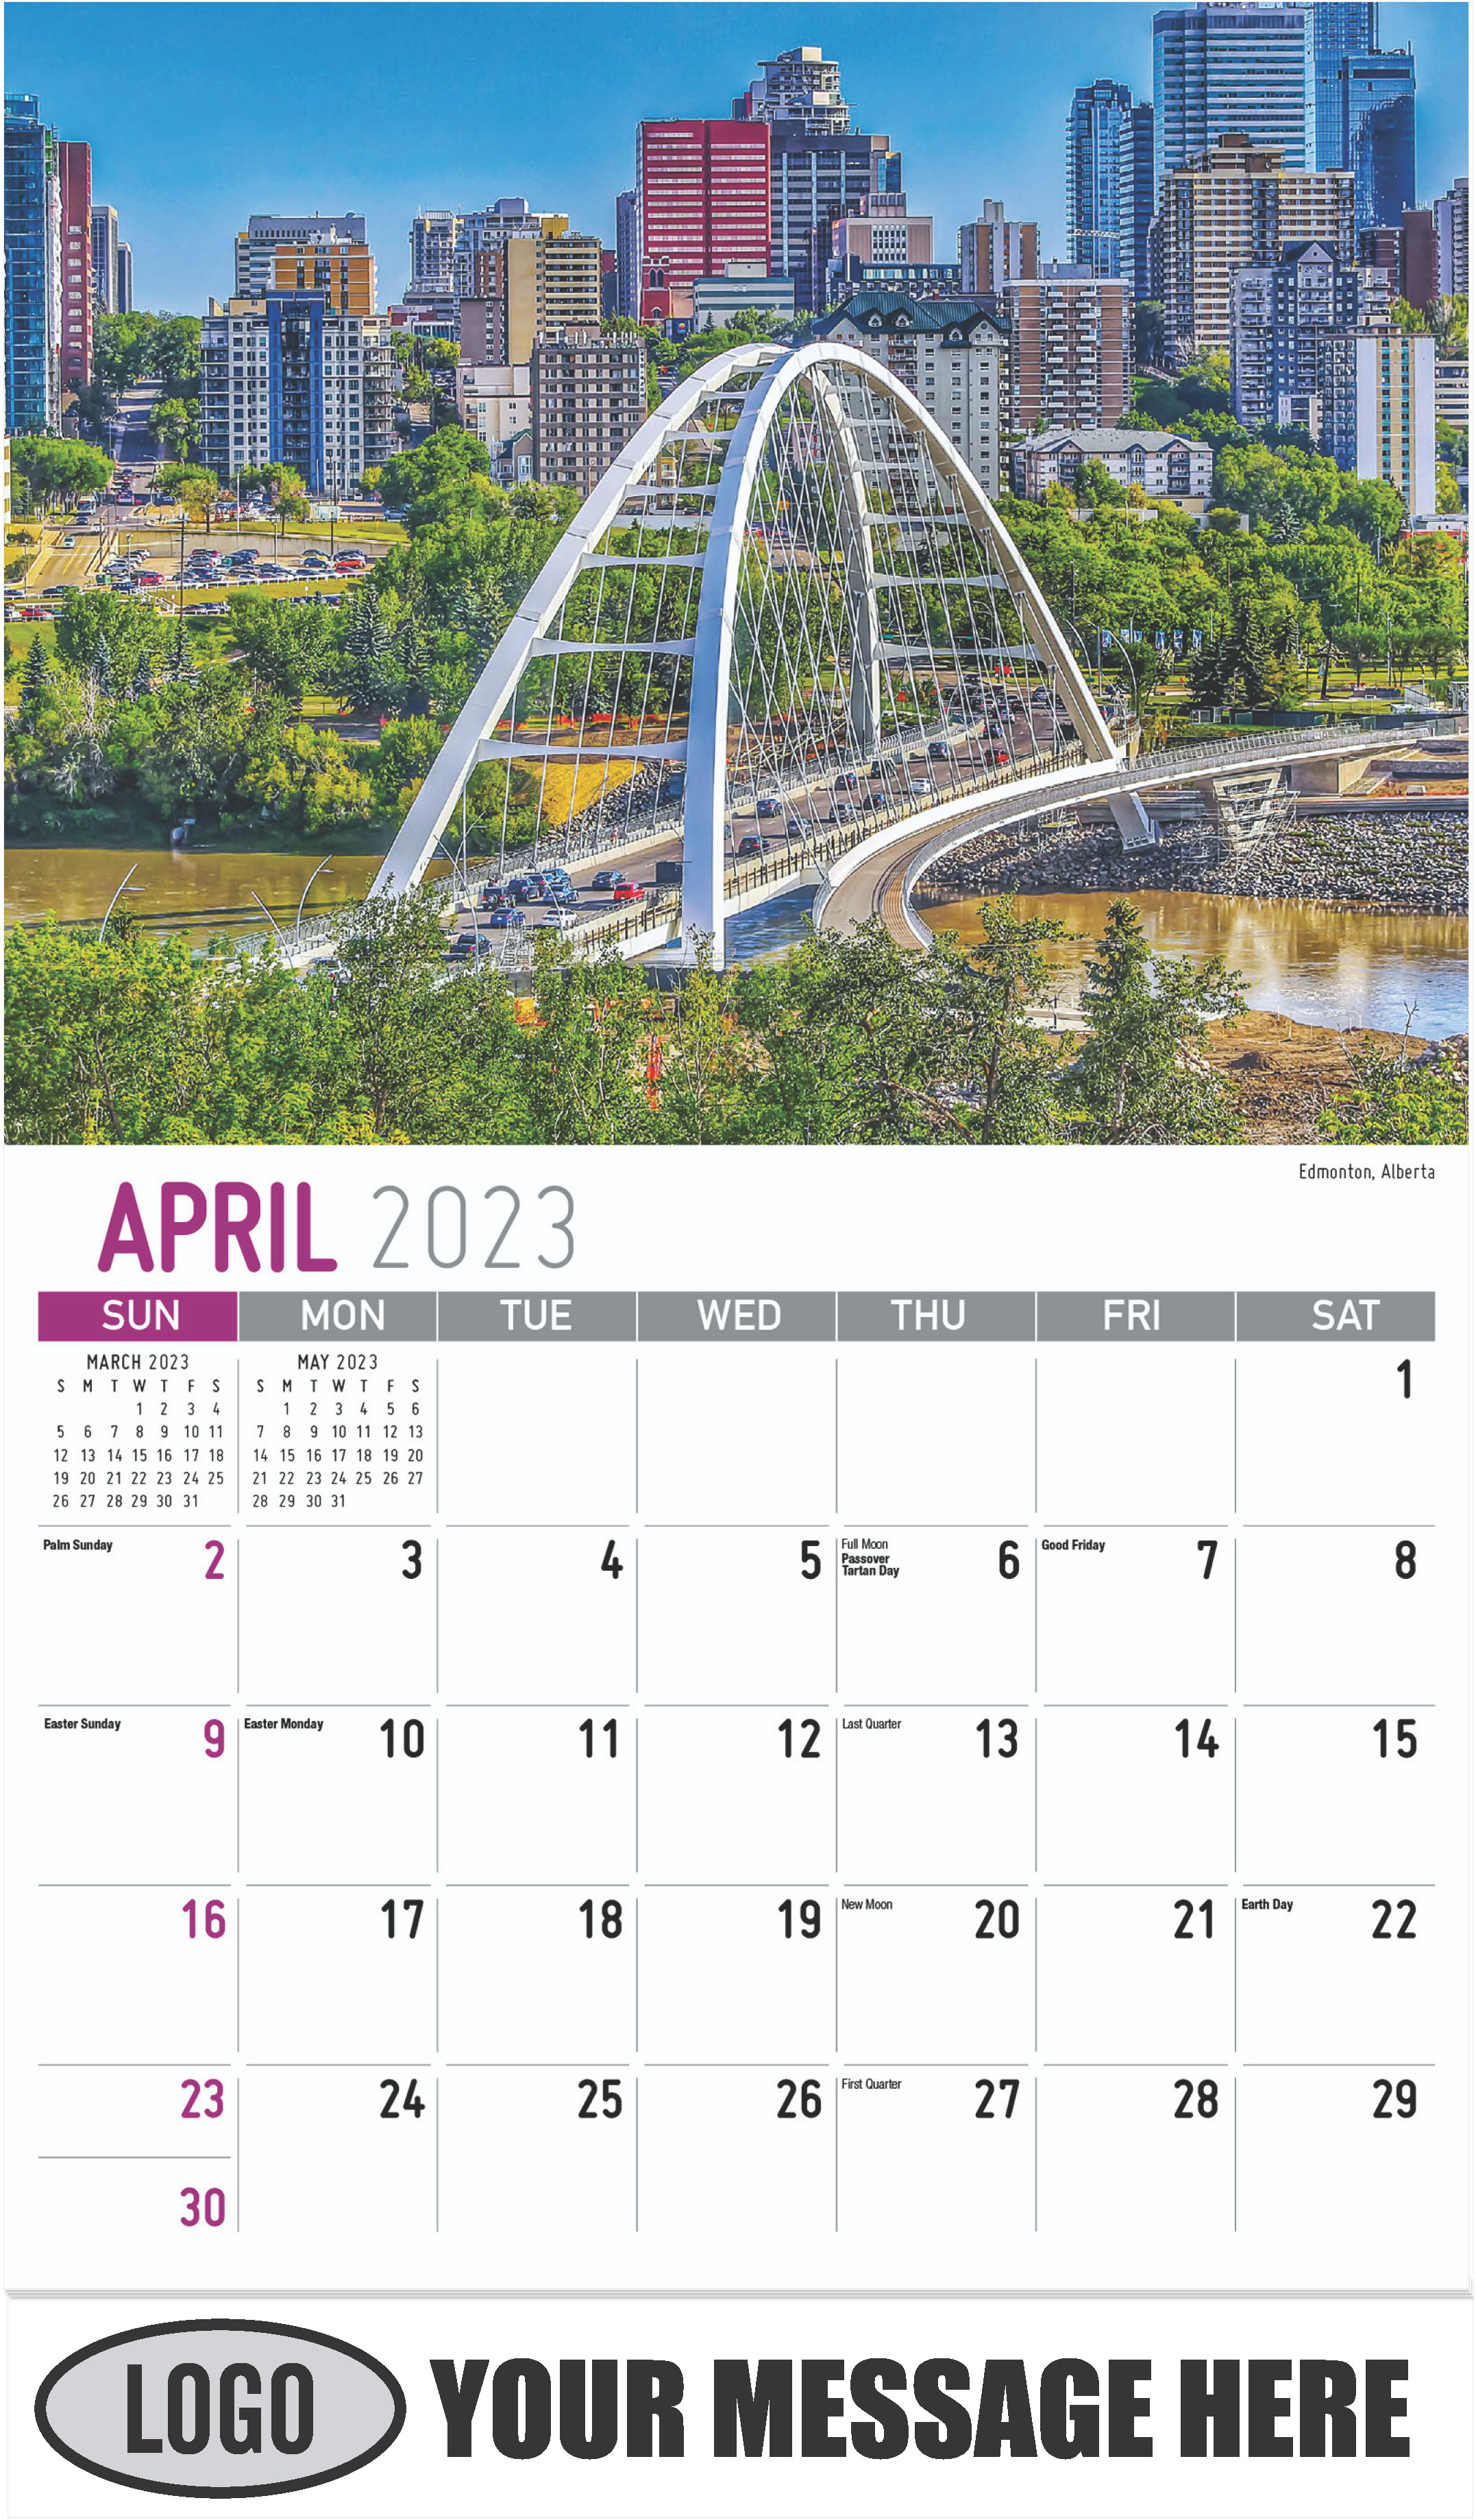 Edmonton, Alberta - April - Scenes of Western Canada 2023 Promotional Calendar